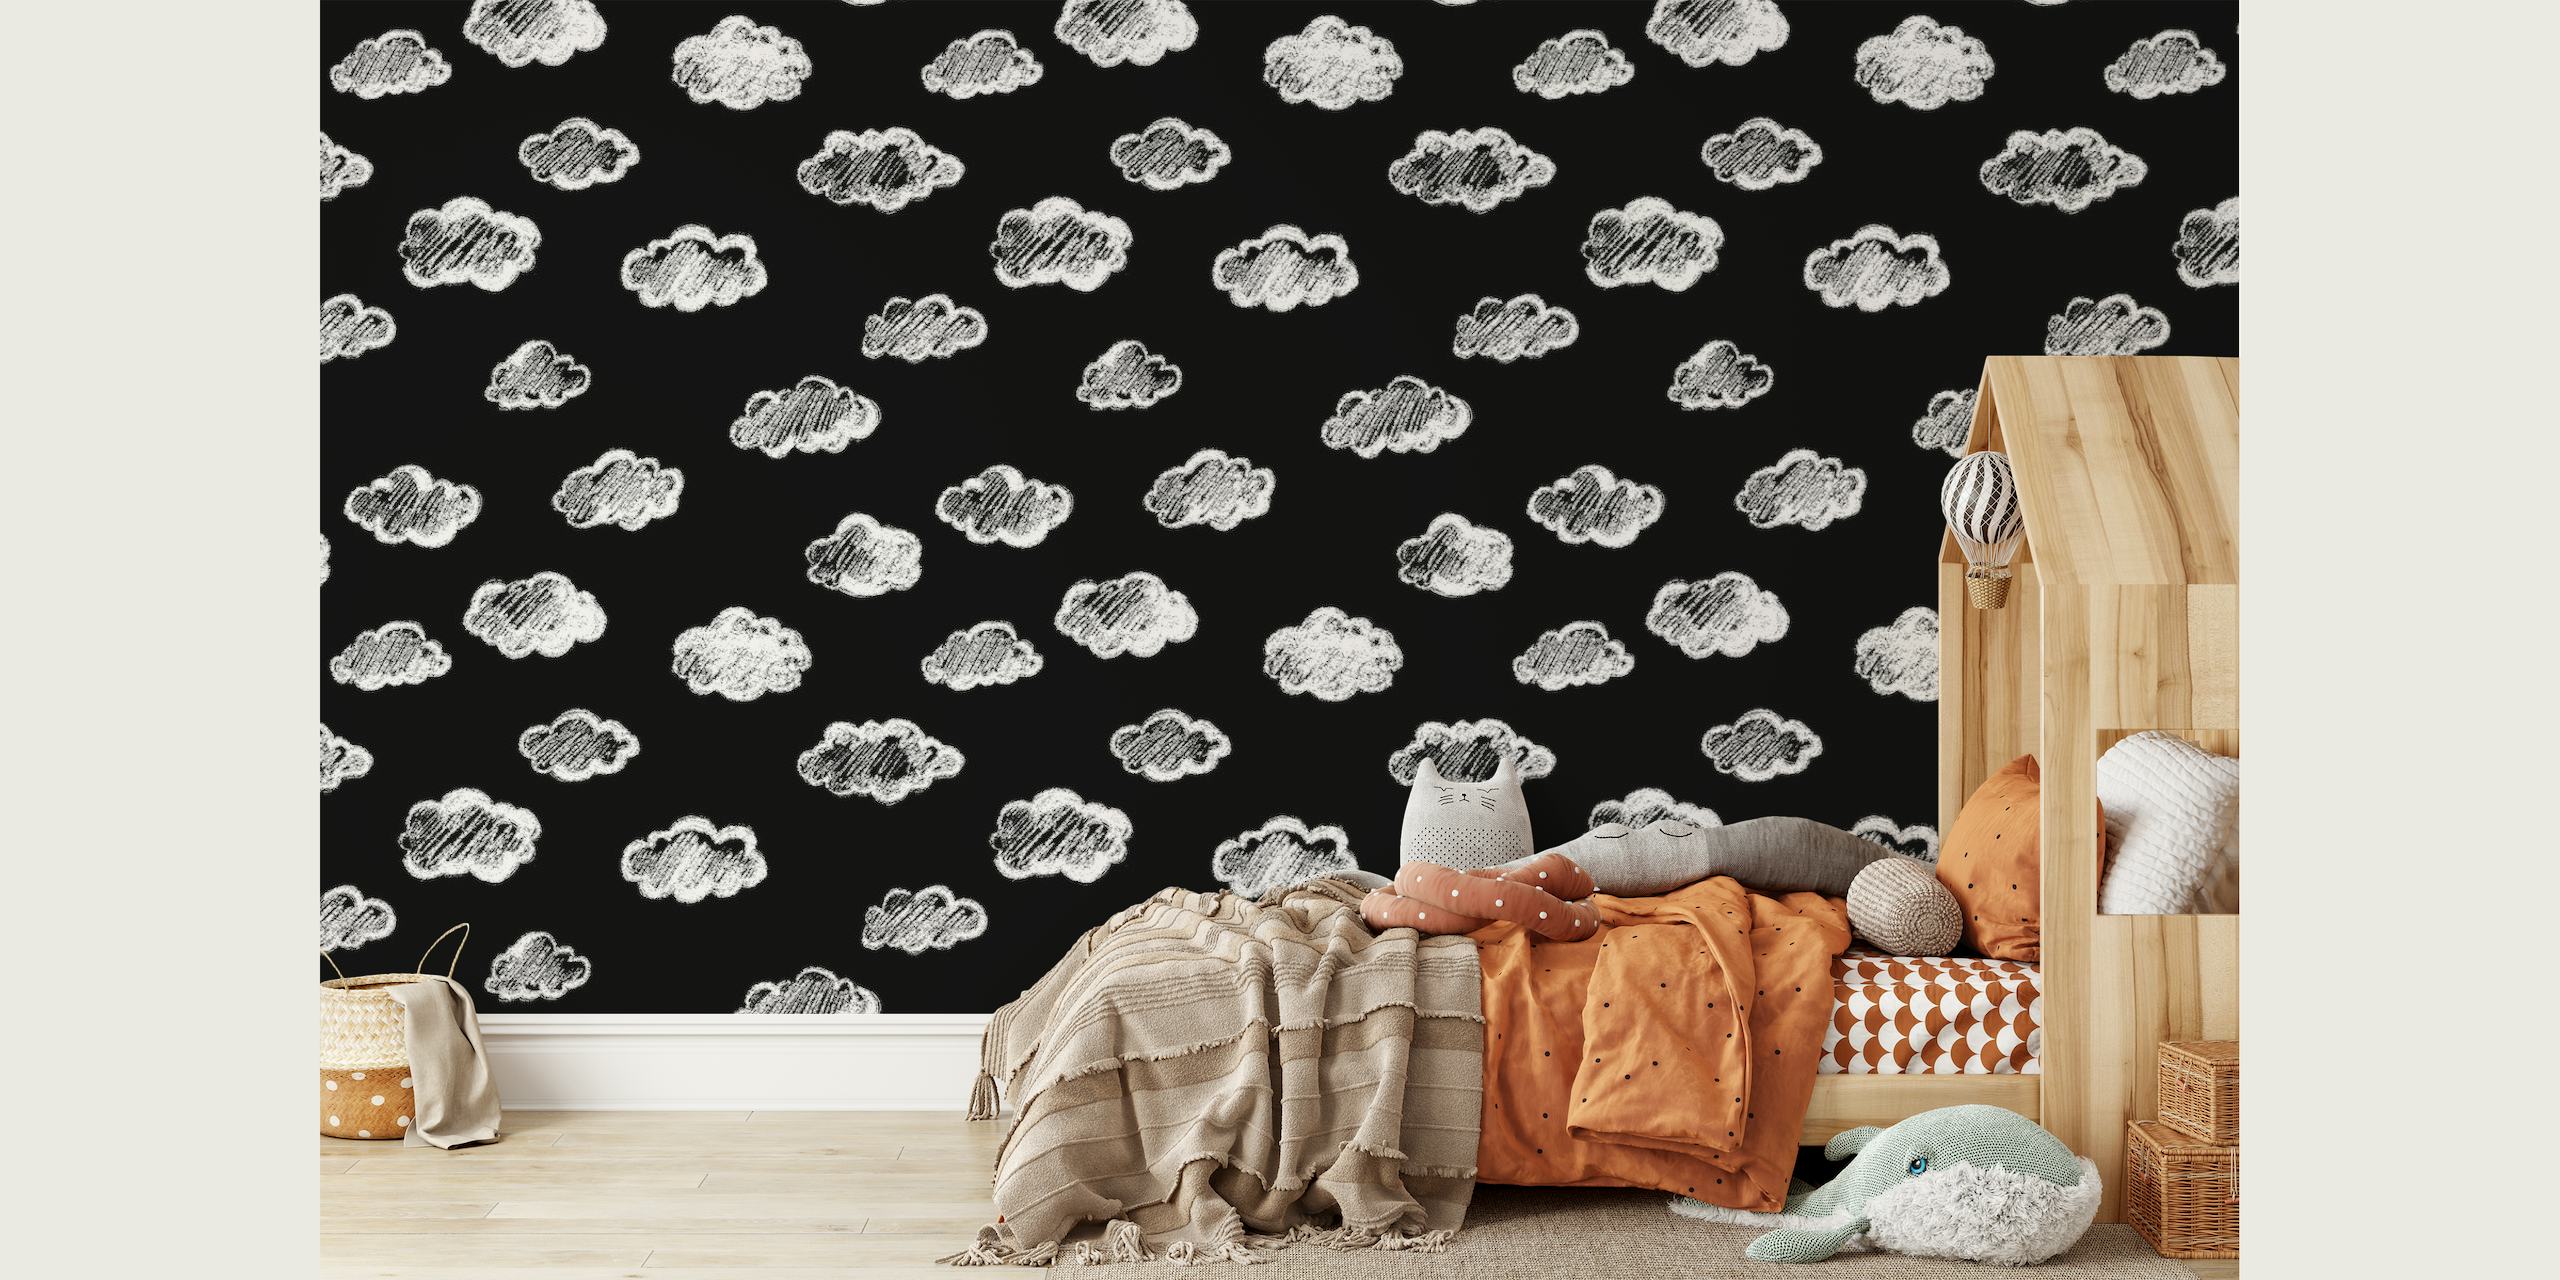 Artístico mural de pared negro con diseños de nubes de tiza blanca de happywall.com